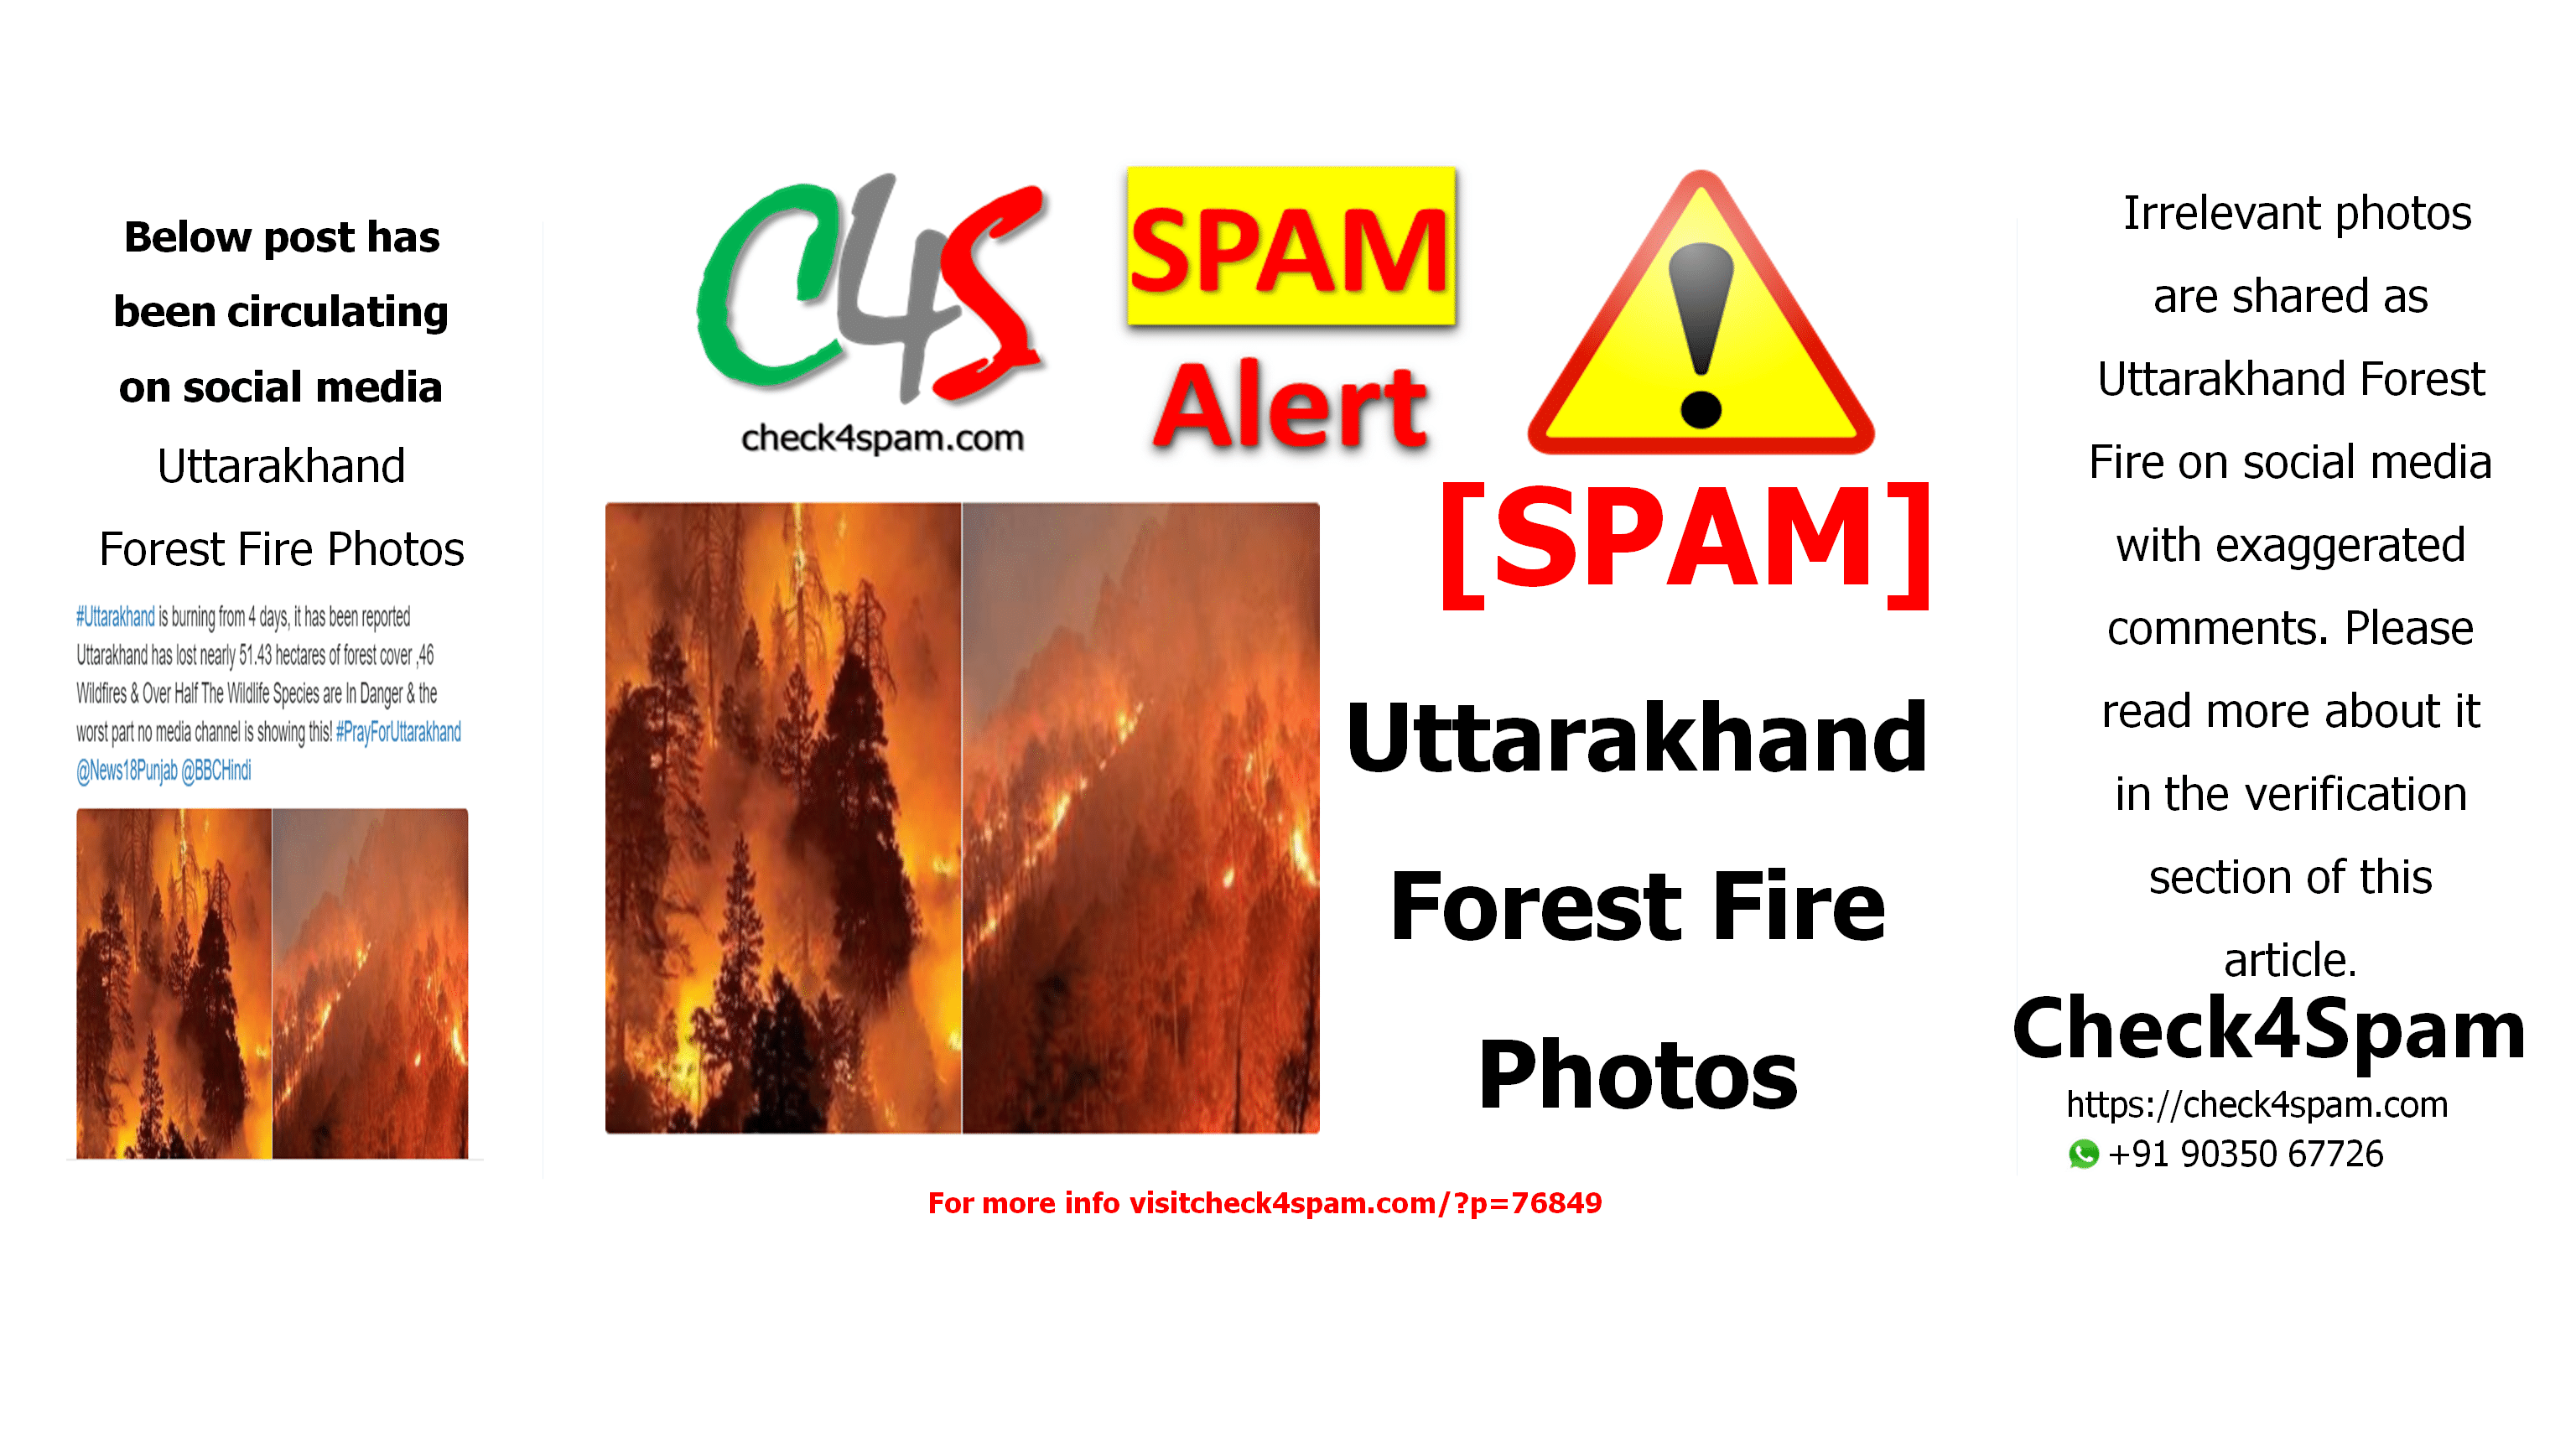 Uttarakhand Forest Fire Photos